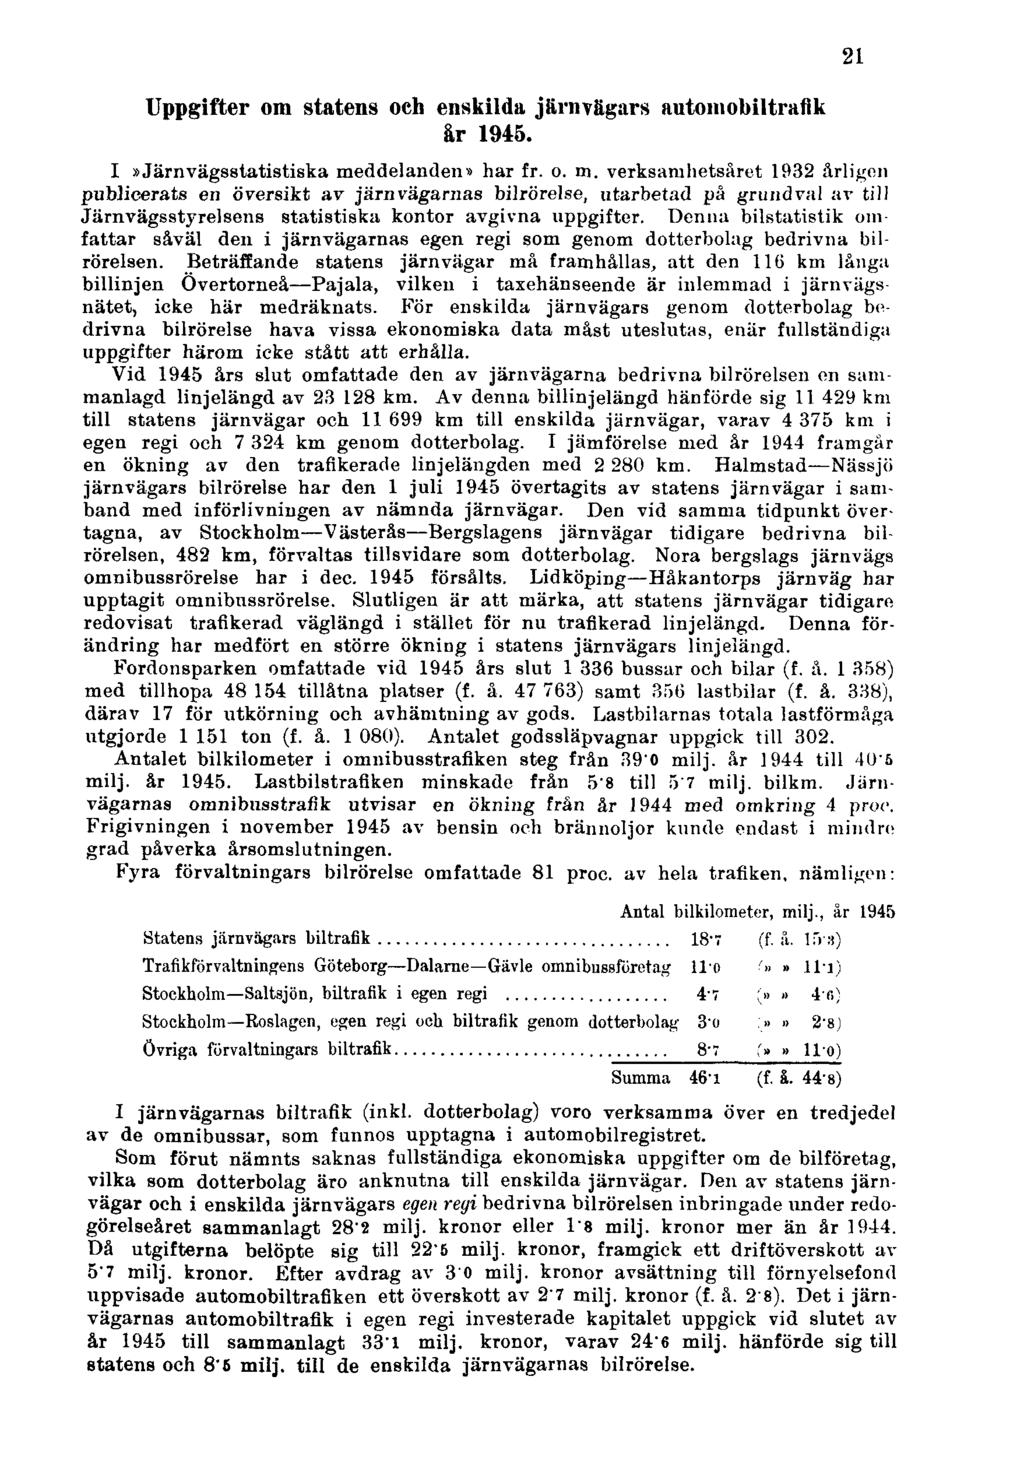 Uppgifter om statens och enskilda järnvägars automobiltrafik år 1945. I»Järnvägsstatistiska me